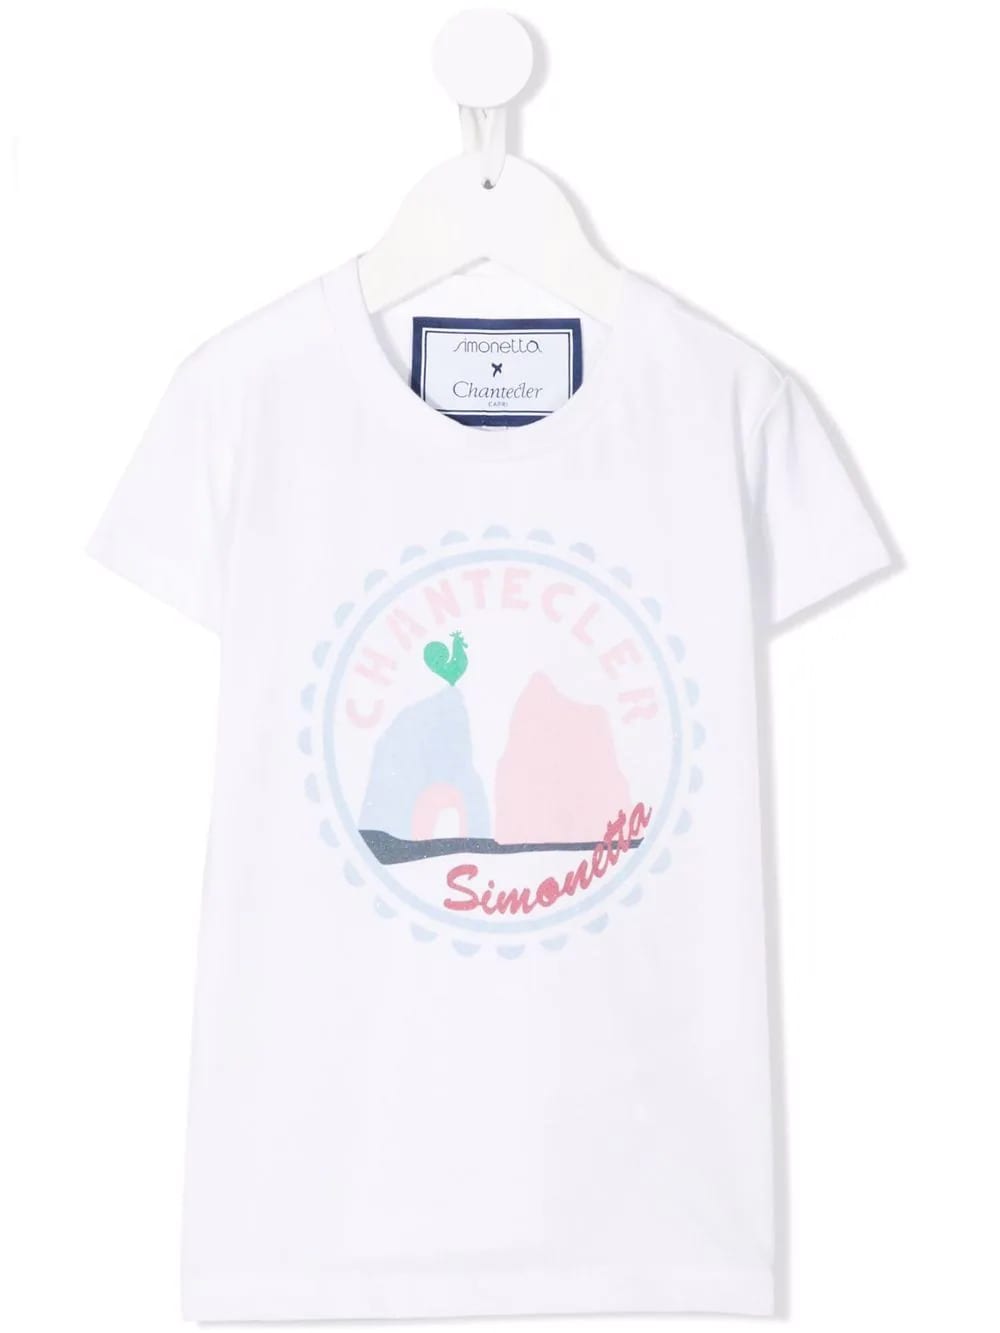 Simonetta Kids White T-shirt With Chantecler Faraglioni Print